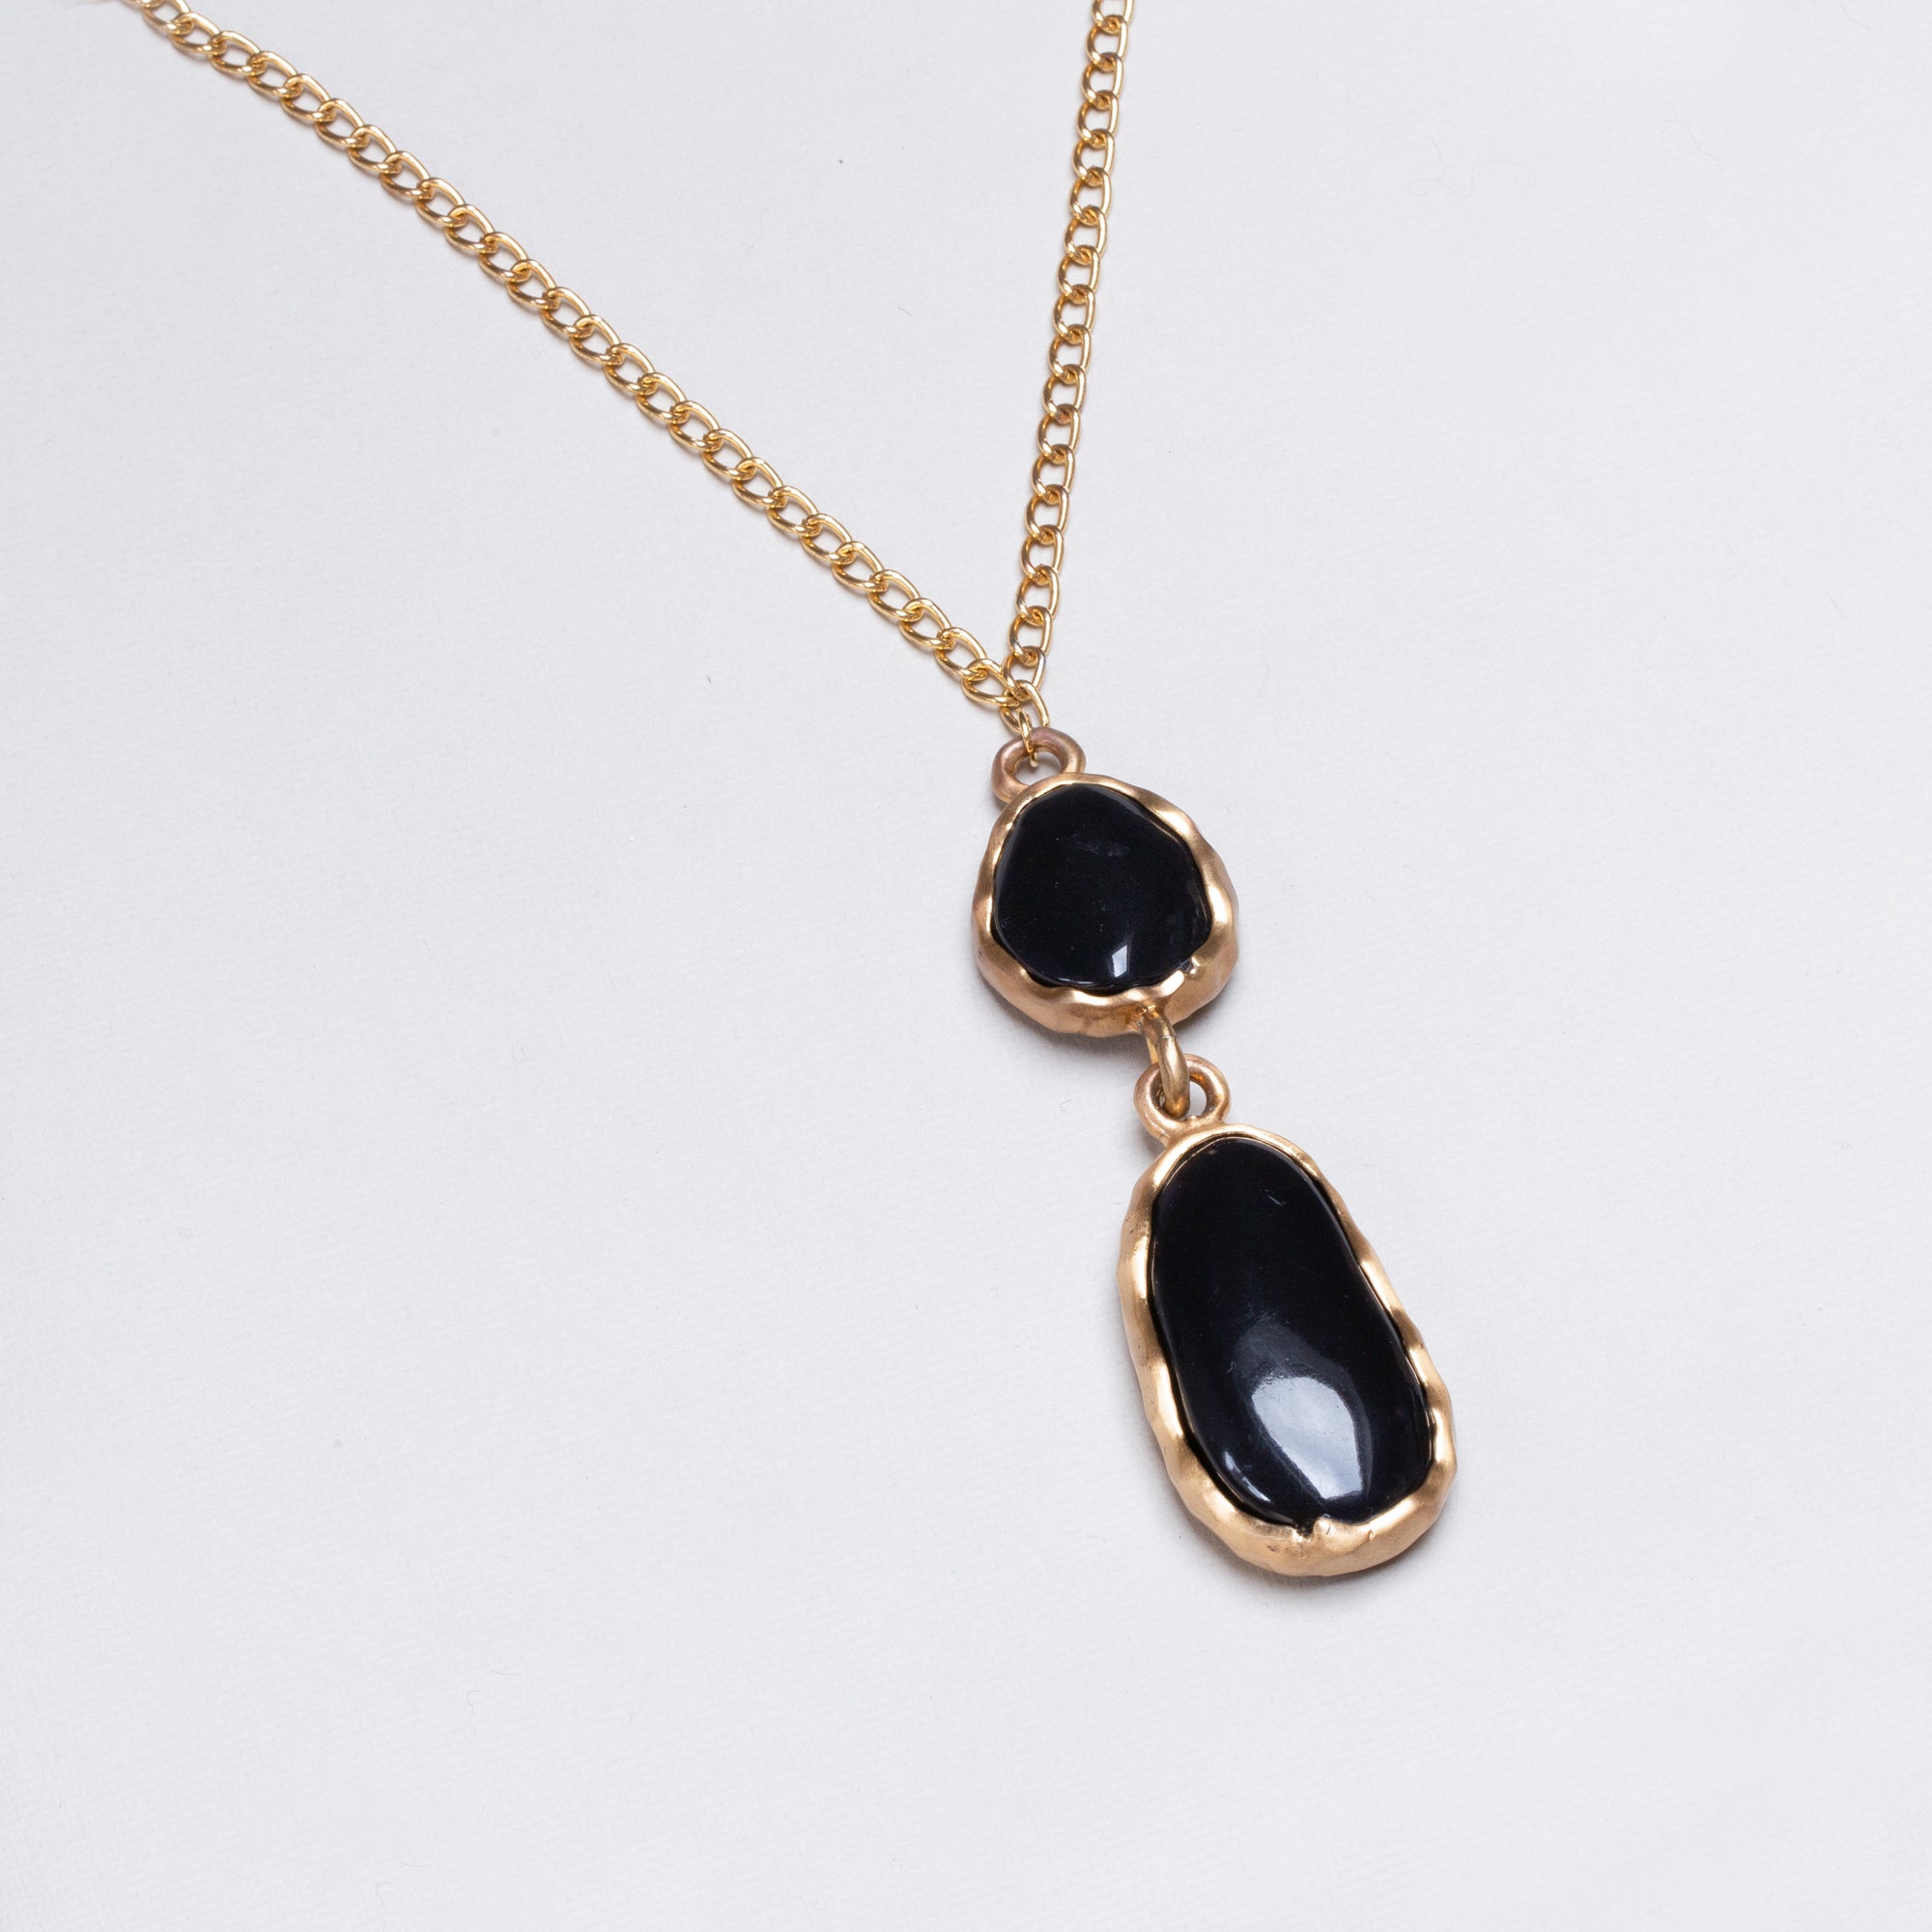 Vintage Black Onyx Pendant Necklace